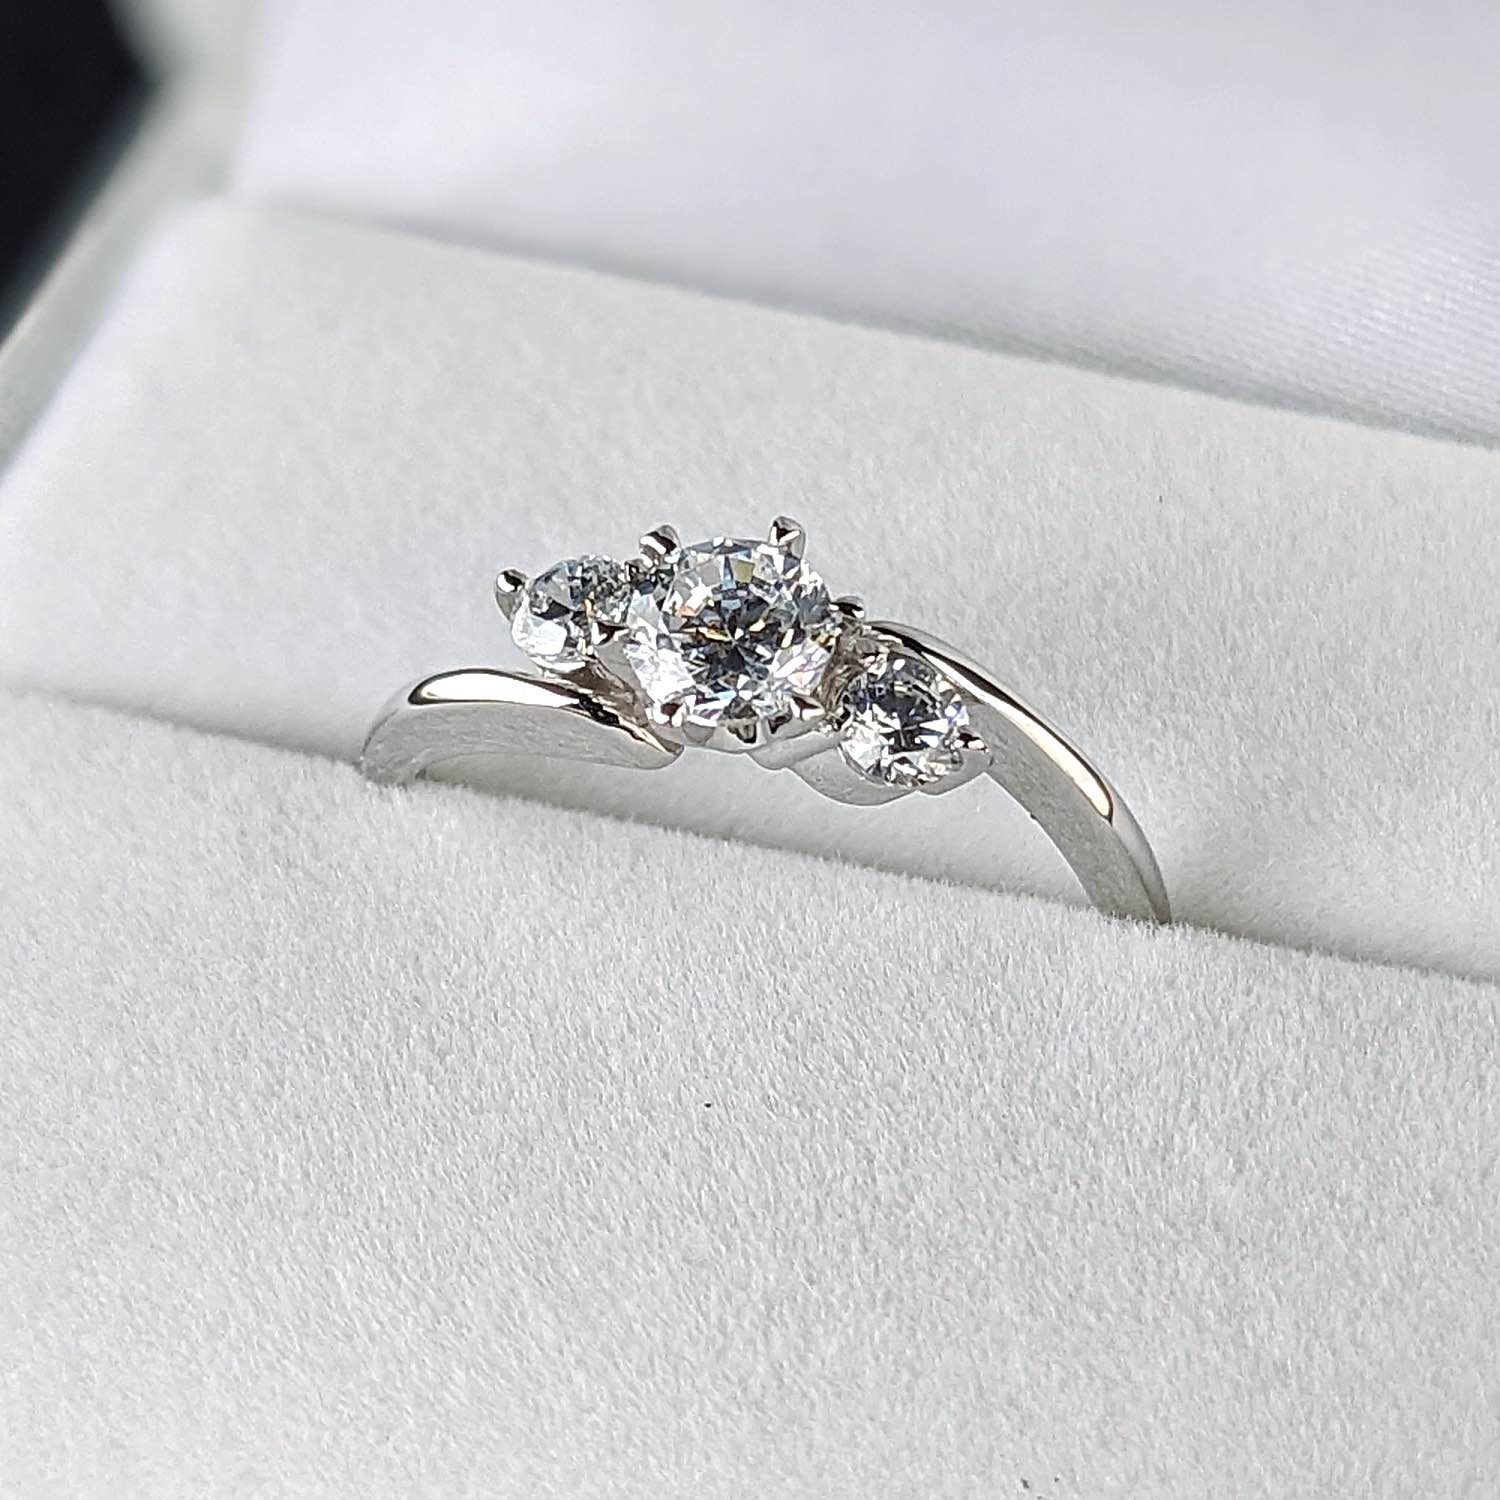 画像1: ティファニーセッティングの６本爪をベースに左右に大きなメレダイヤを留めた、６本爪サイドメレデザインの婚約指輪 (1)